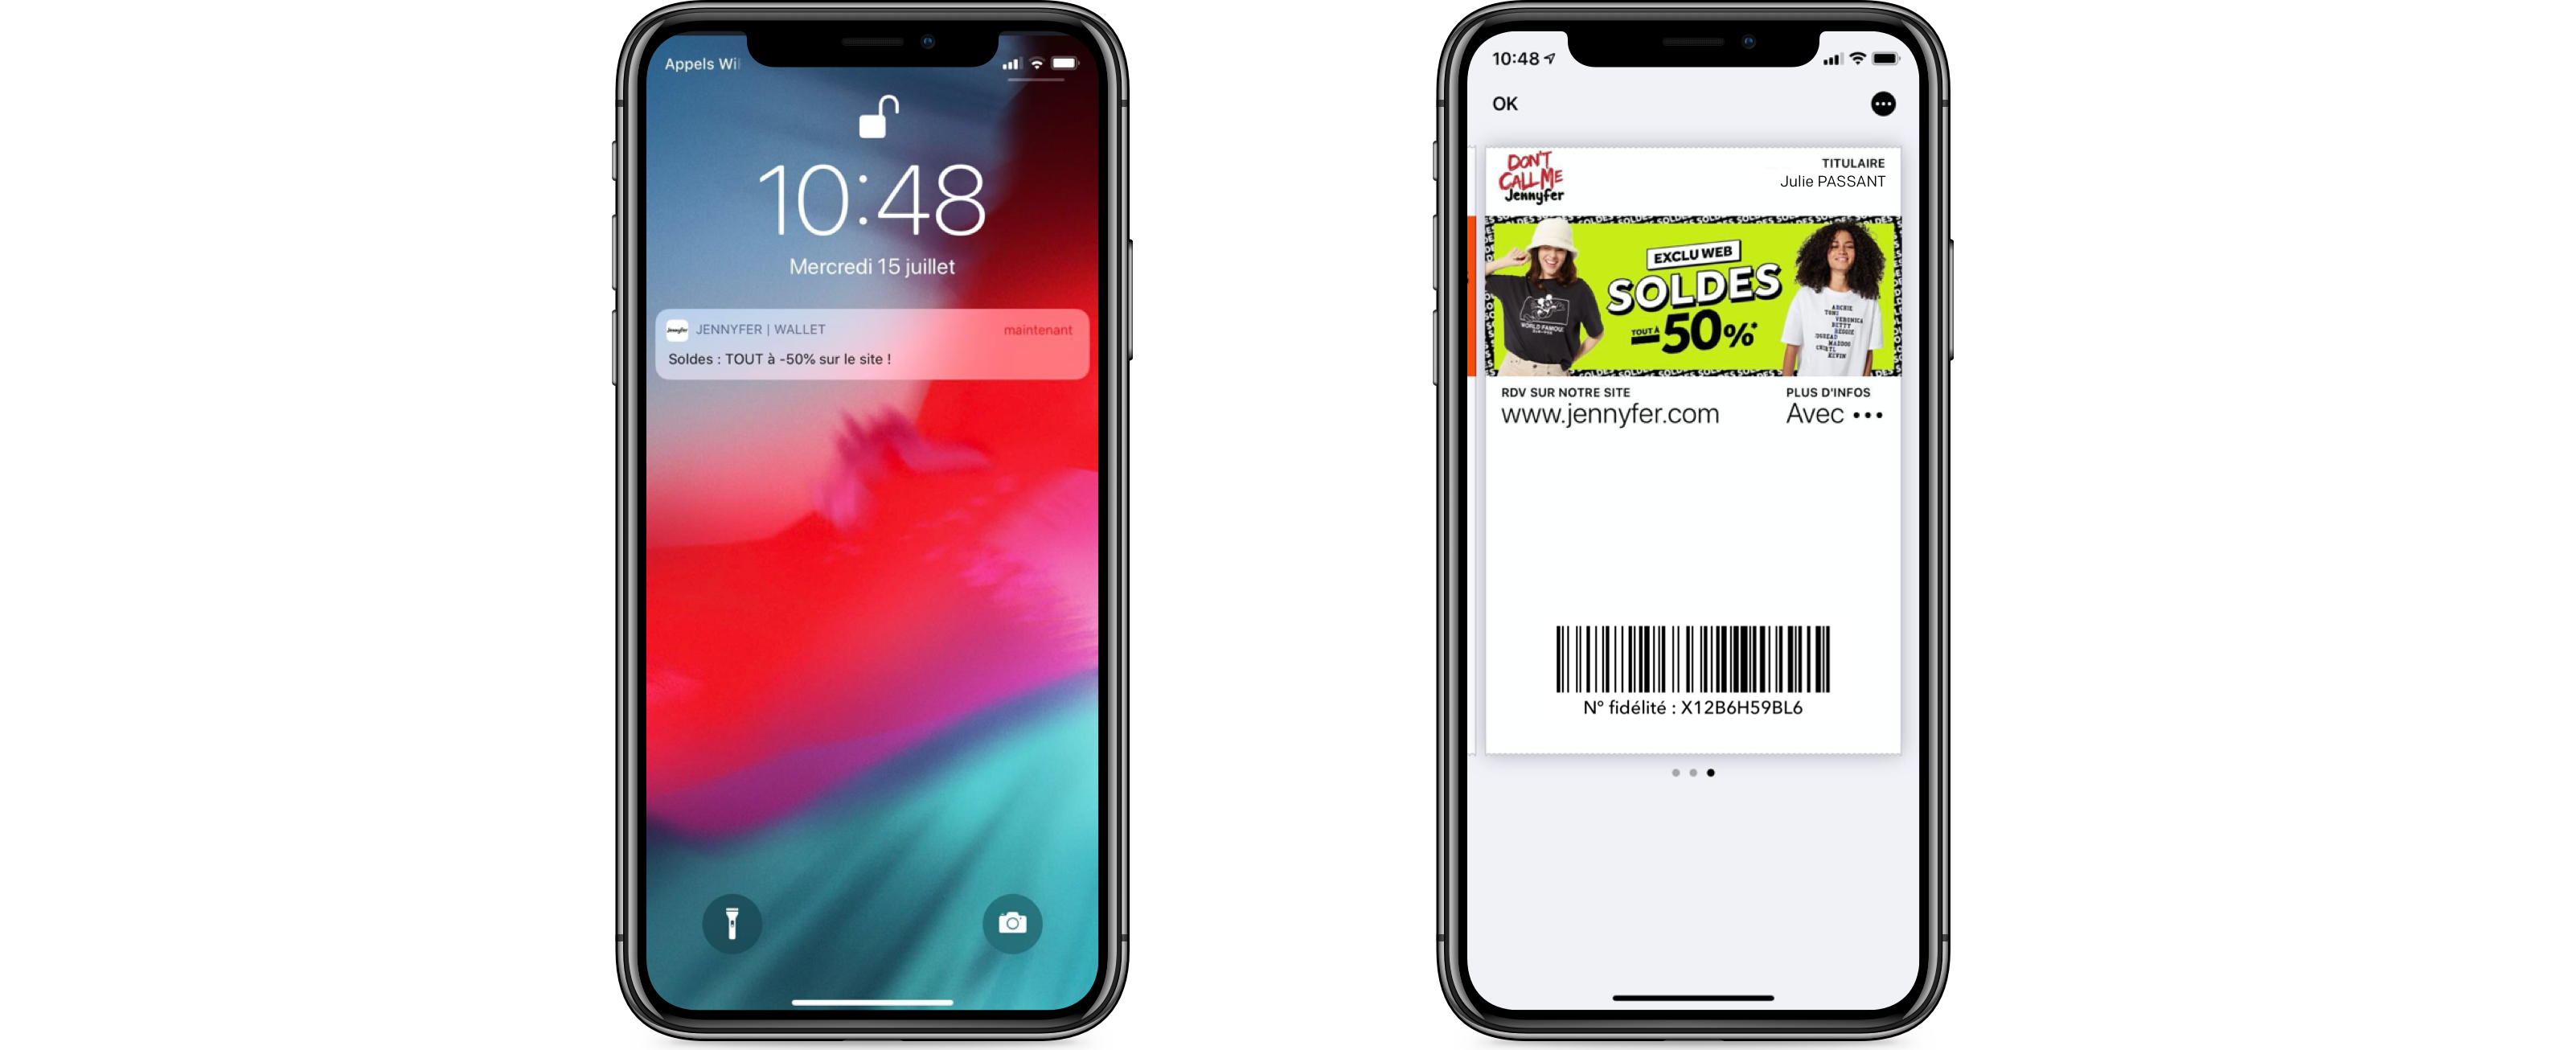 Jennyfer - Wallet mobile soldes dété 2020